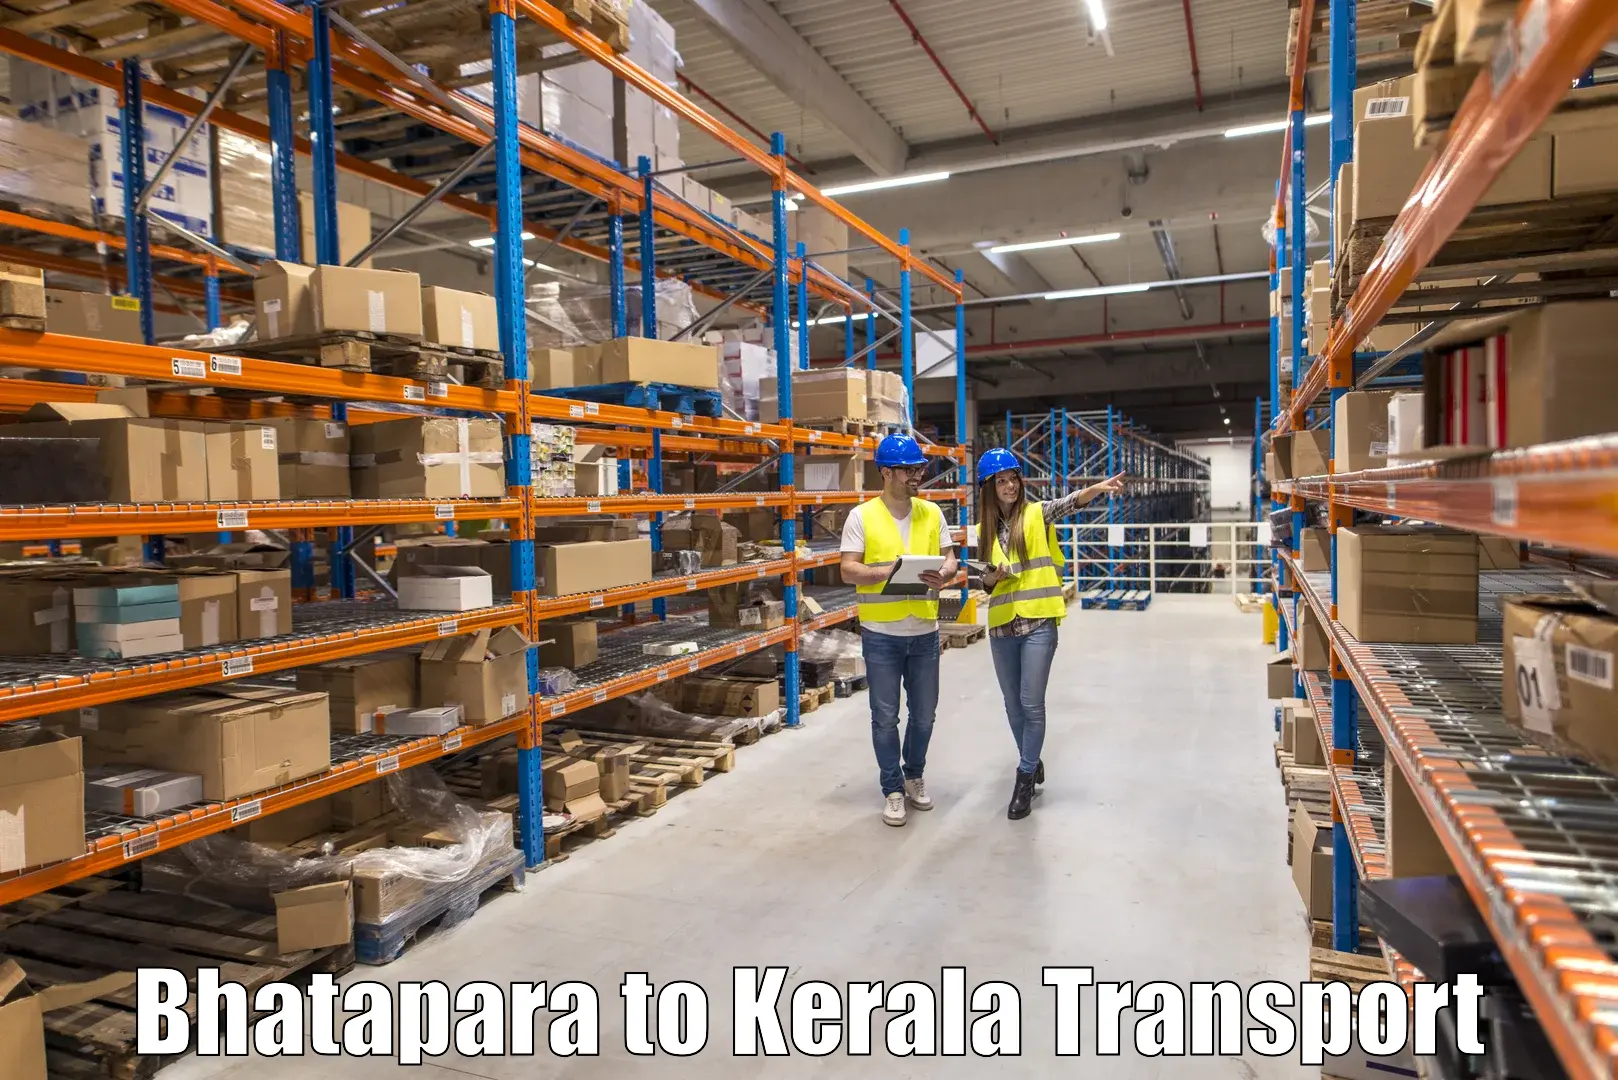 Nearest transport service Bhatapara to Nedumkandam